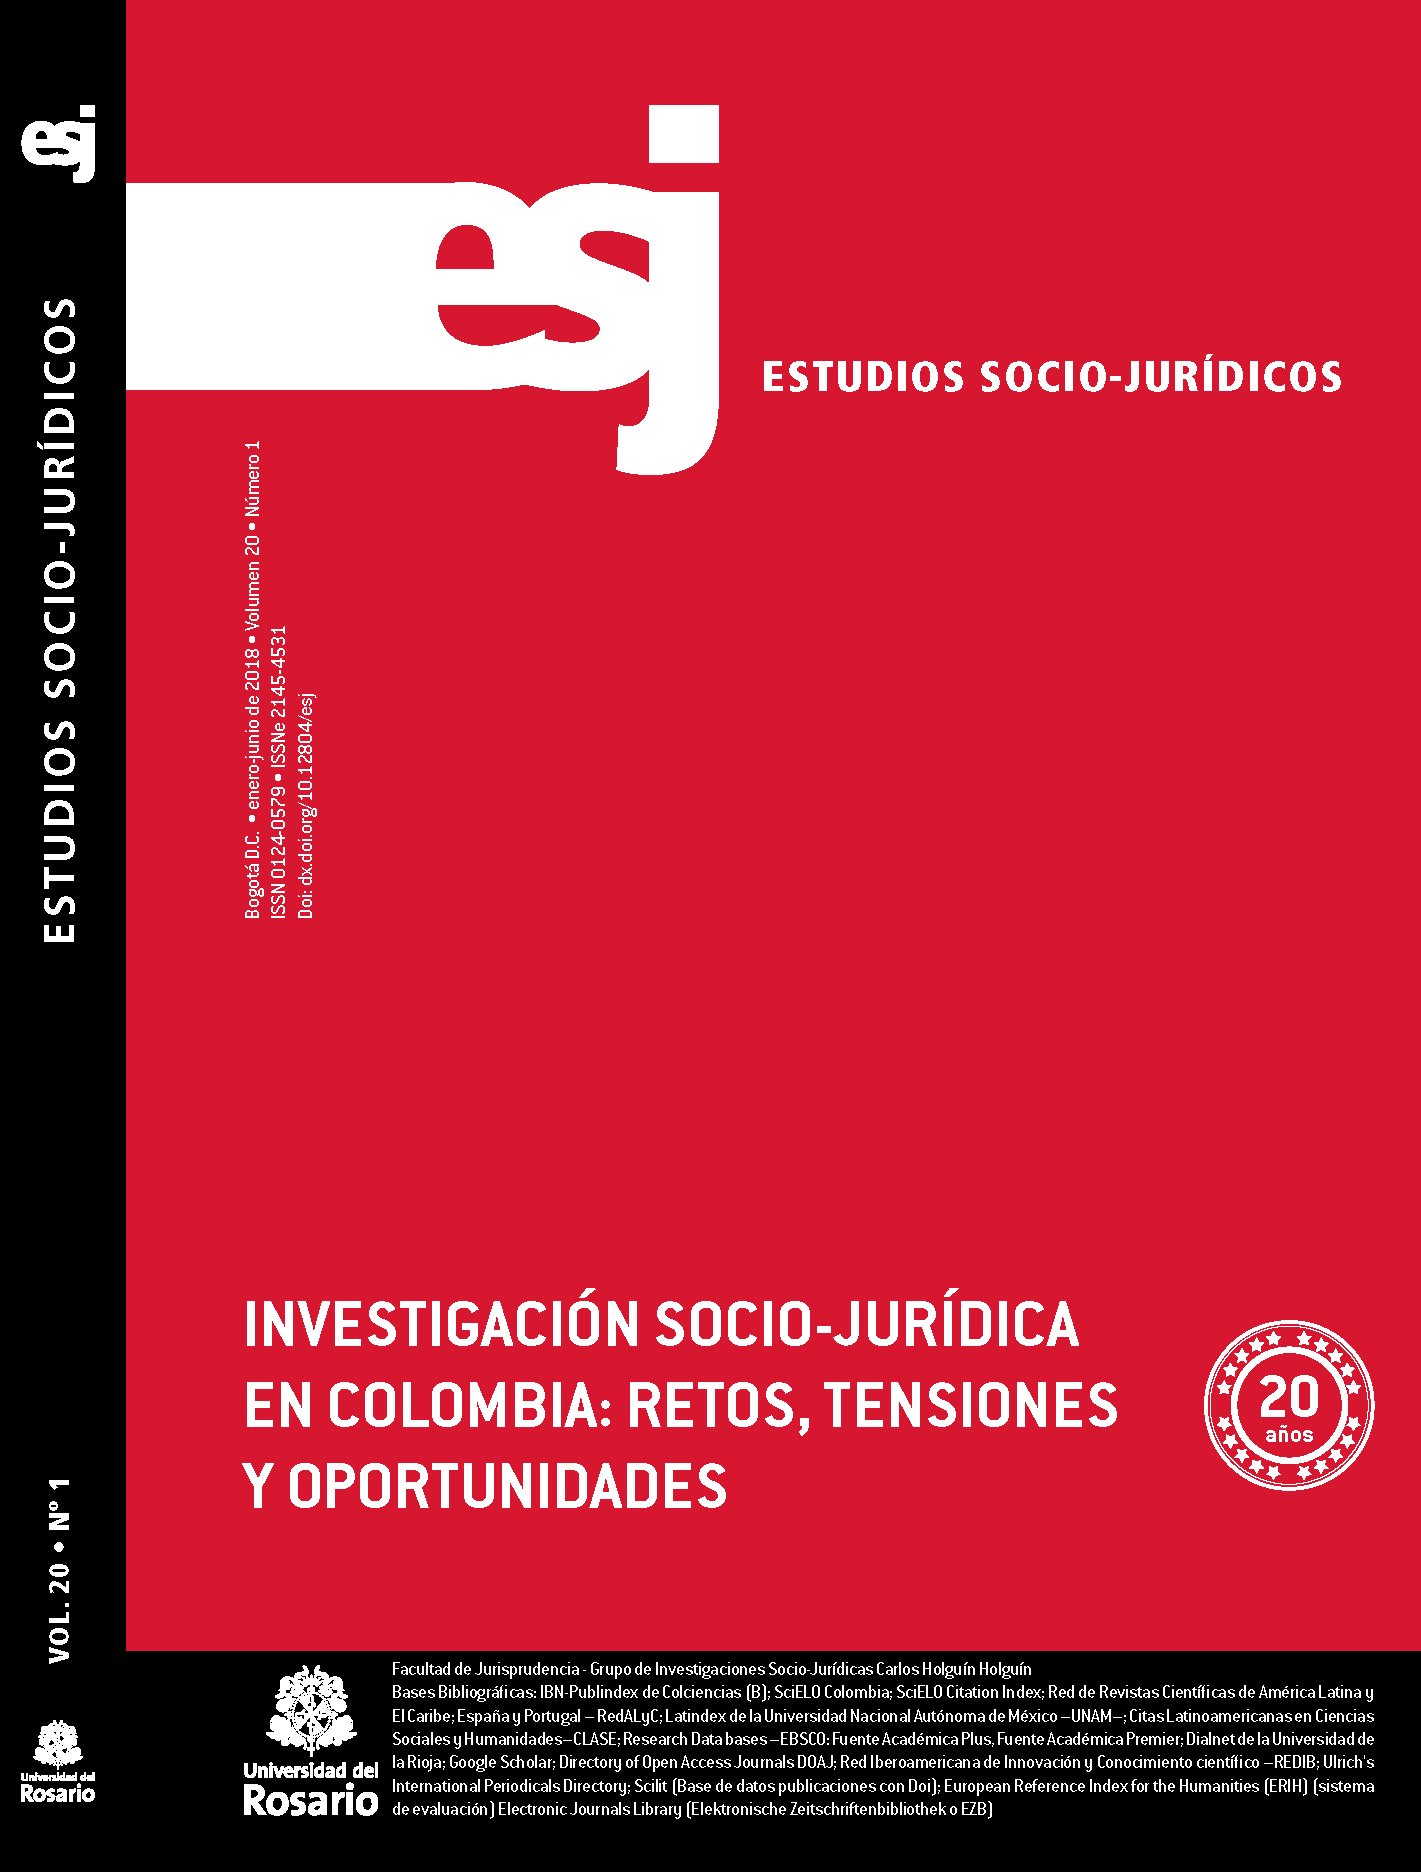 Revista científica editada por la Universidad del Rosario, enfocada en temas socio jurídicos. @Juris_urosario